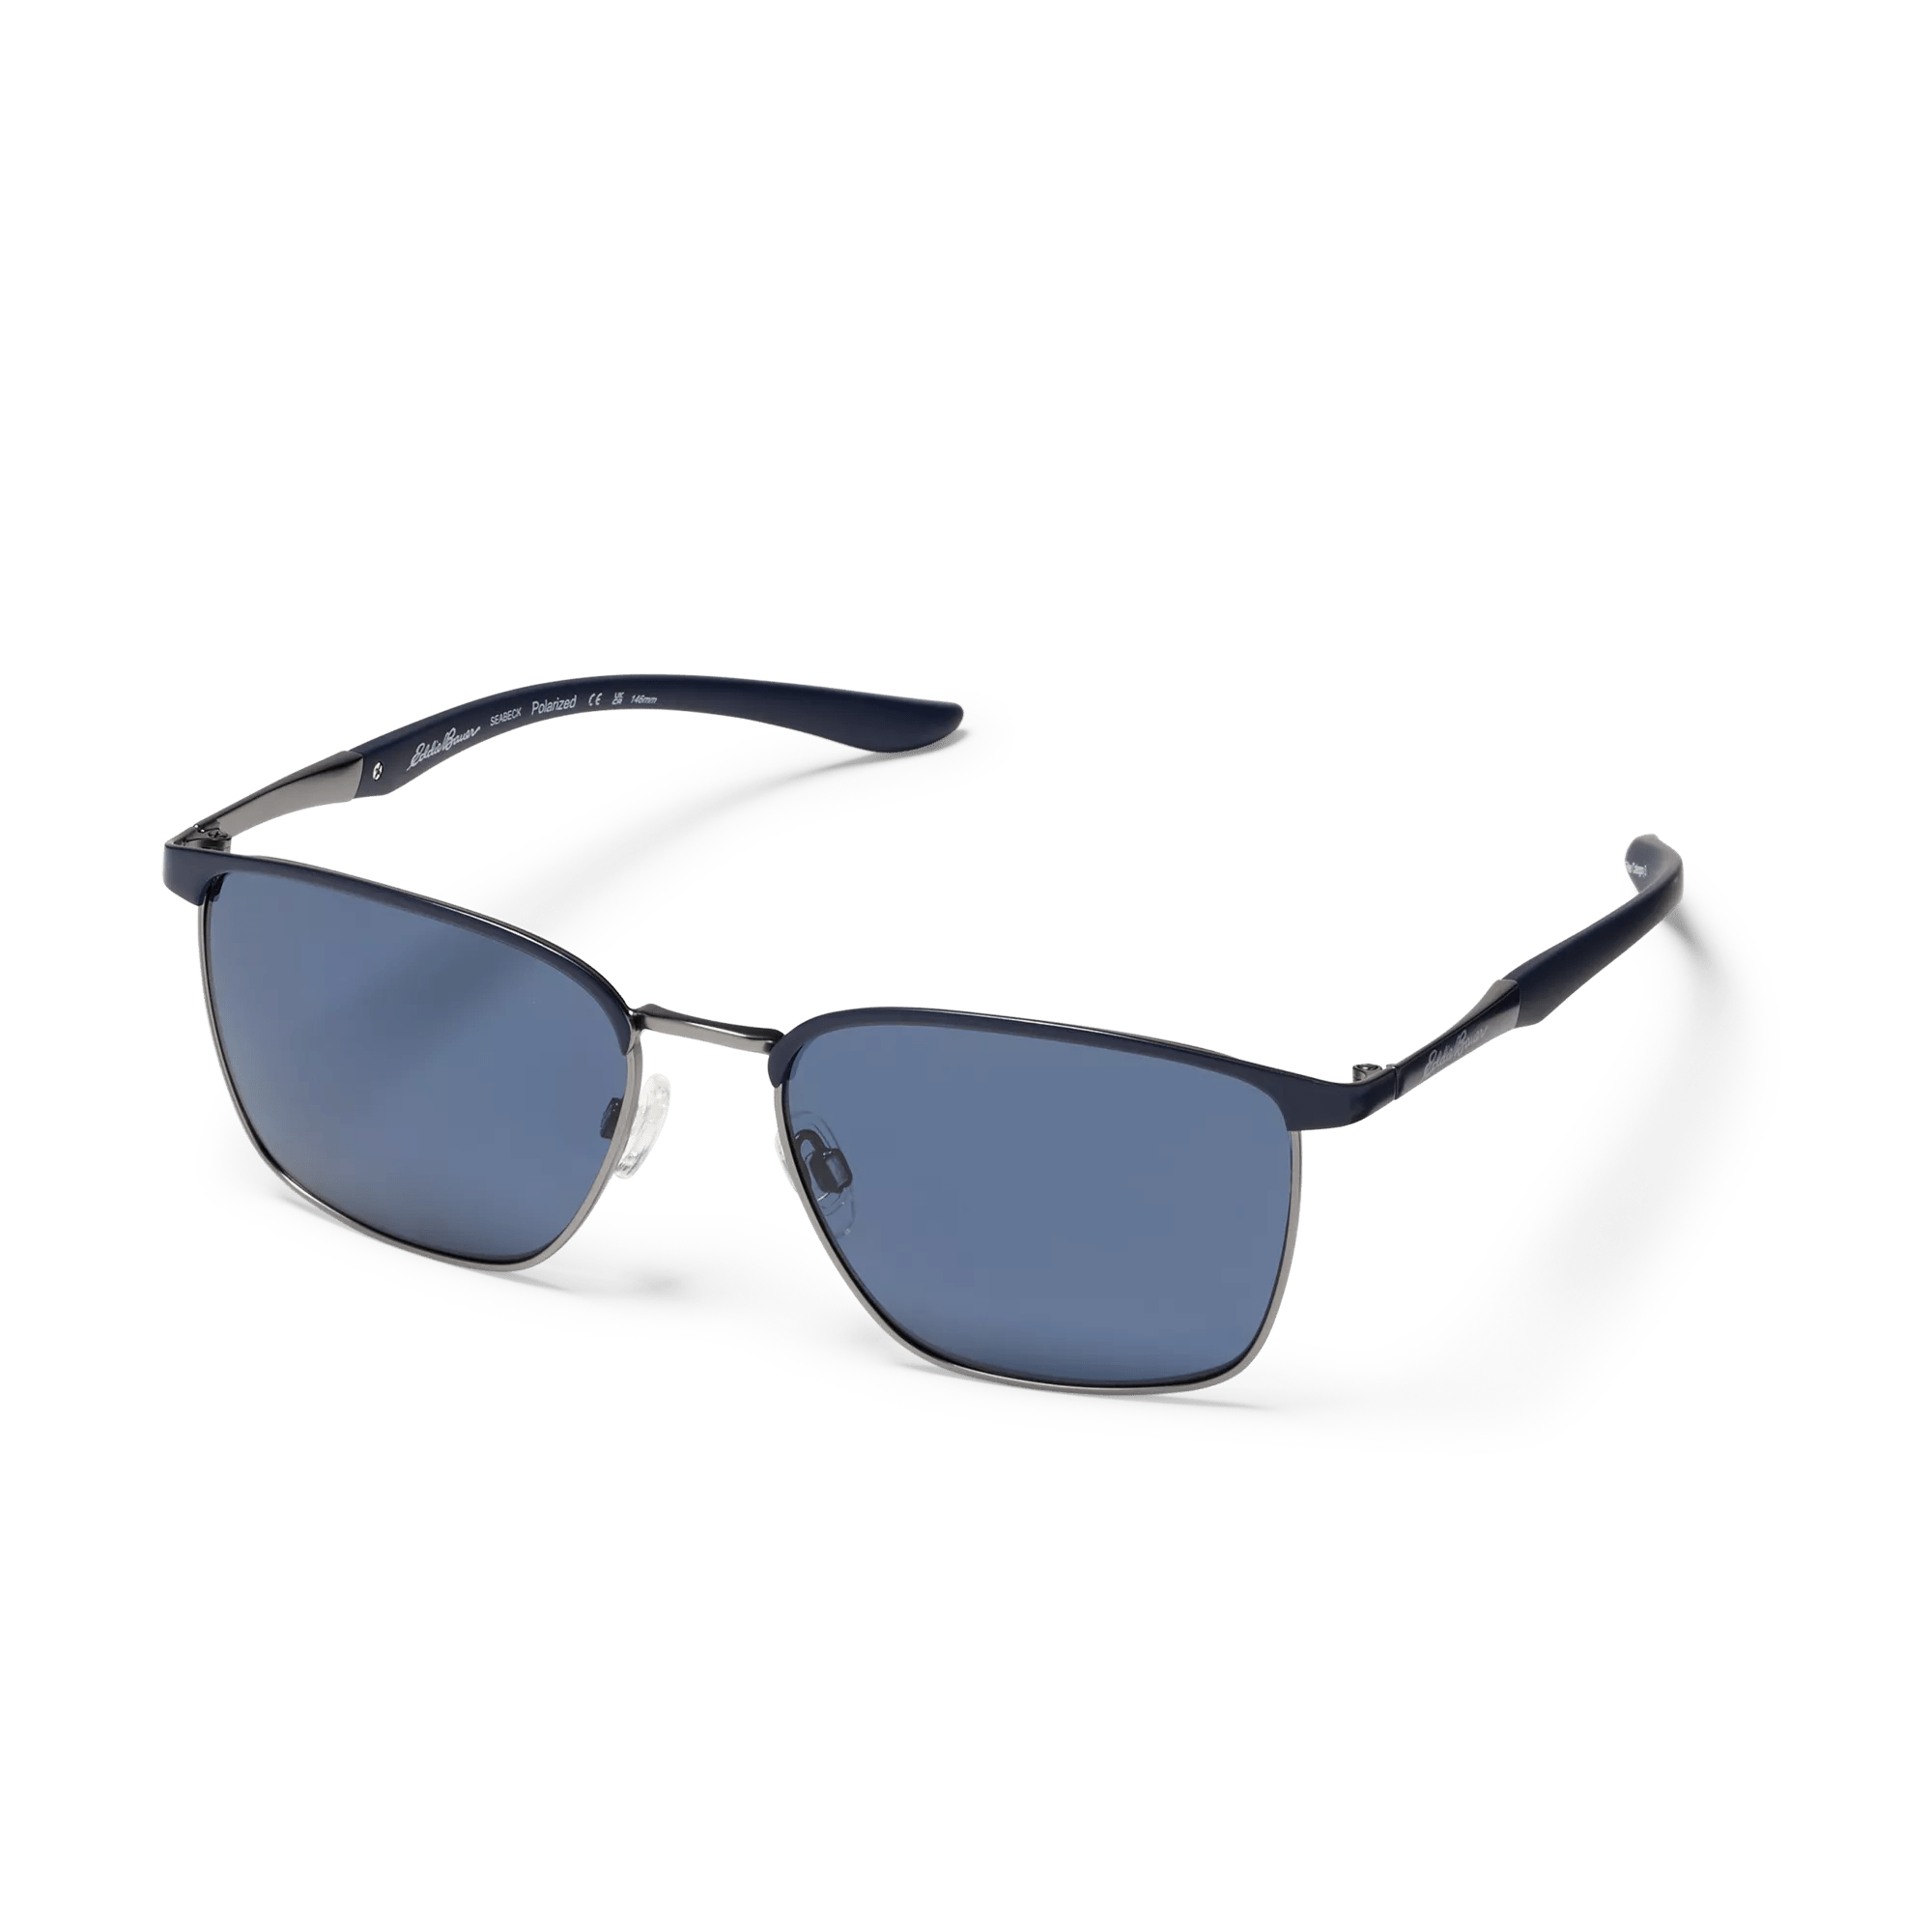 Seabeck Polarized Sunglasses